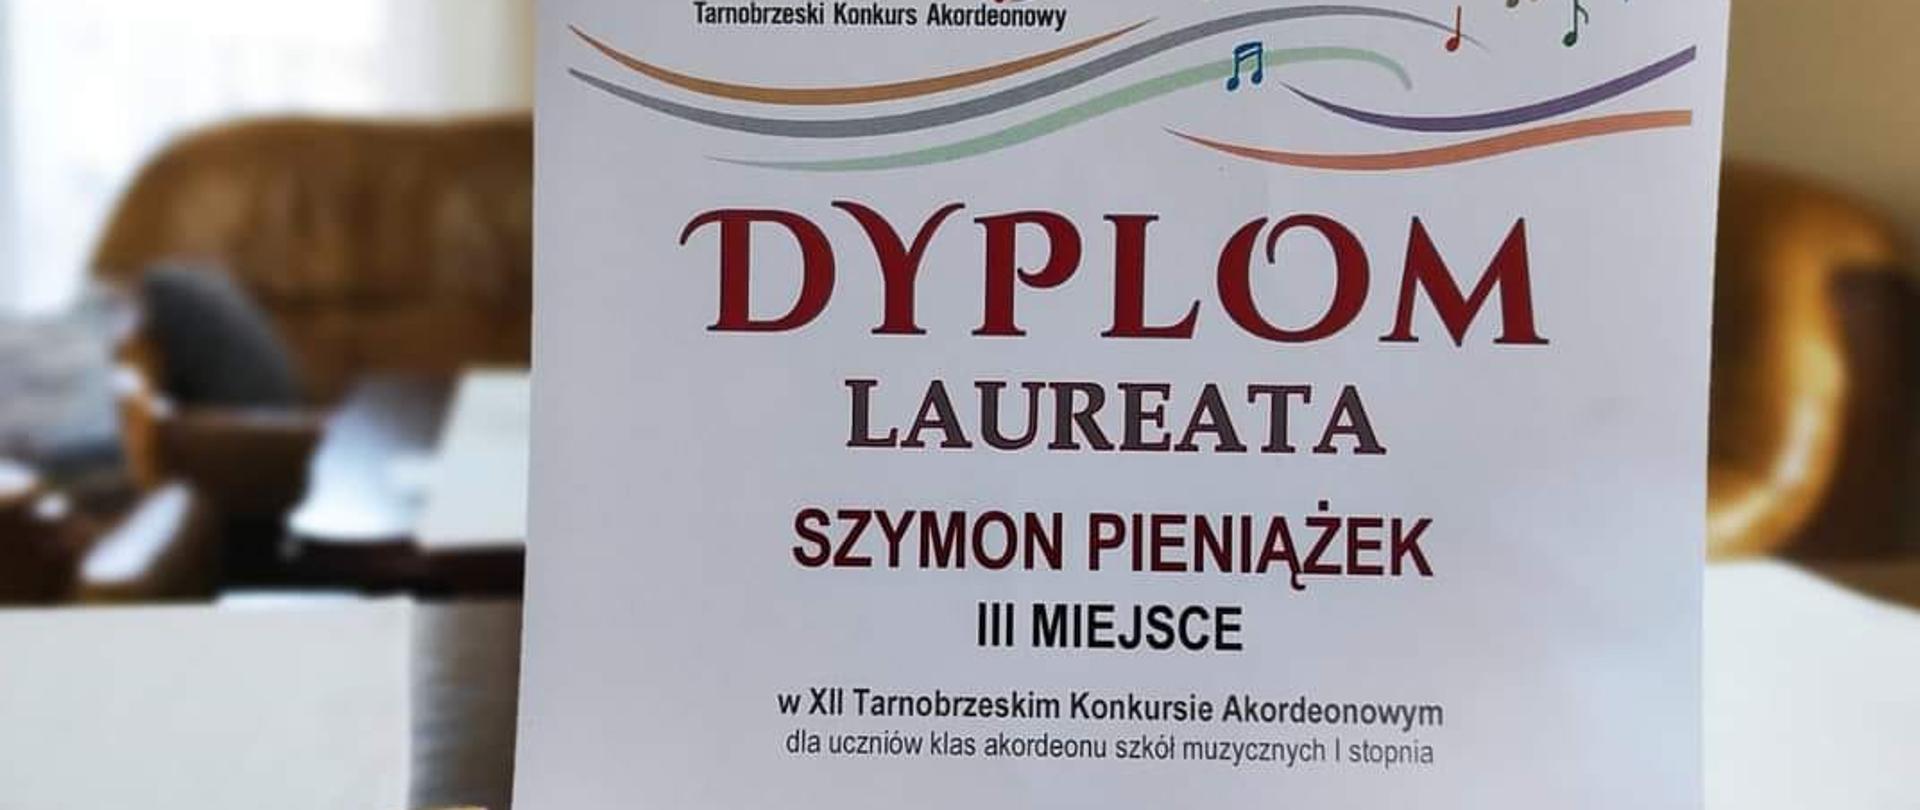 Dyplom Szymona Pieniążka za zajęcie III Miejsca w Tarnobrzeskim Konkursie Akordeonowym, w tle bukiet kwiatów, obok dyplomu statuetka.